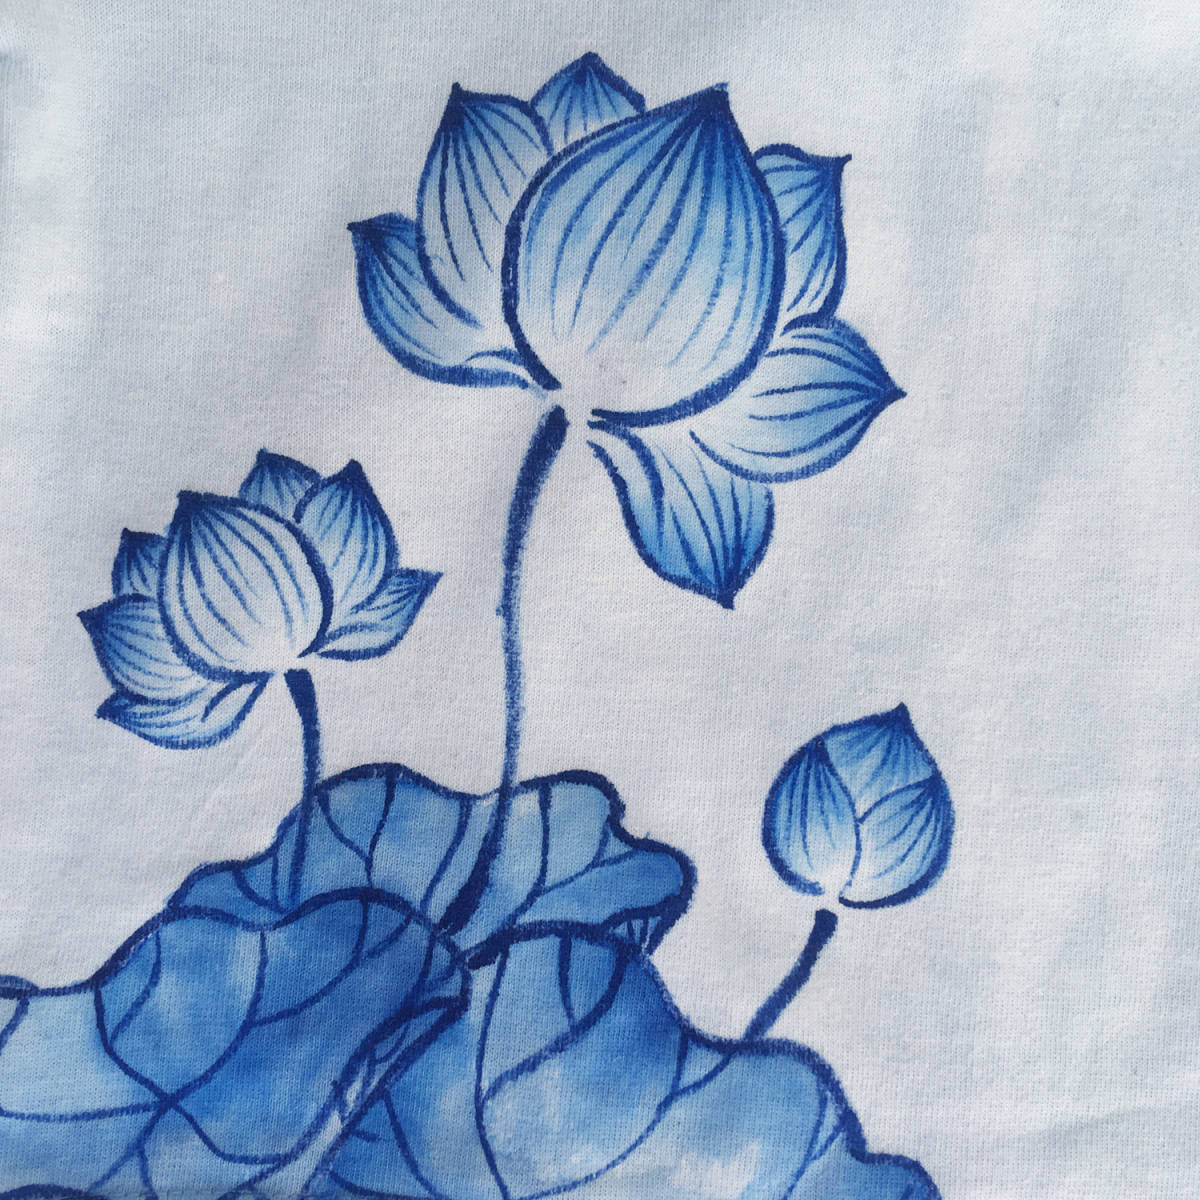 キッズ Tシャツ 150サイズ ブルー 蓮柄Tシャツ 手描きで描いた蓮の花柄Tシャツ 半袖 和柄 和風 レトロ ハンドメイド